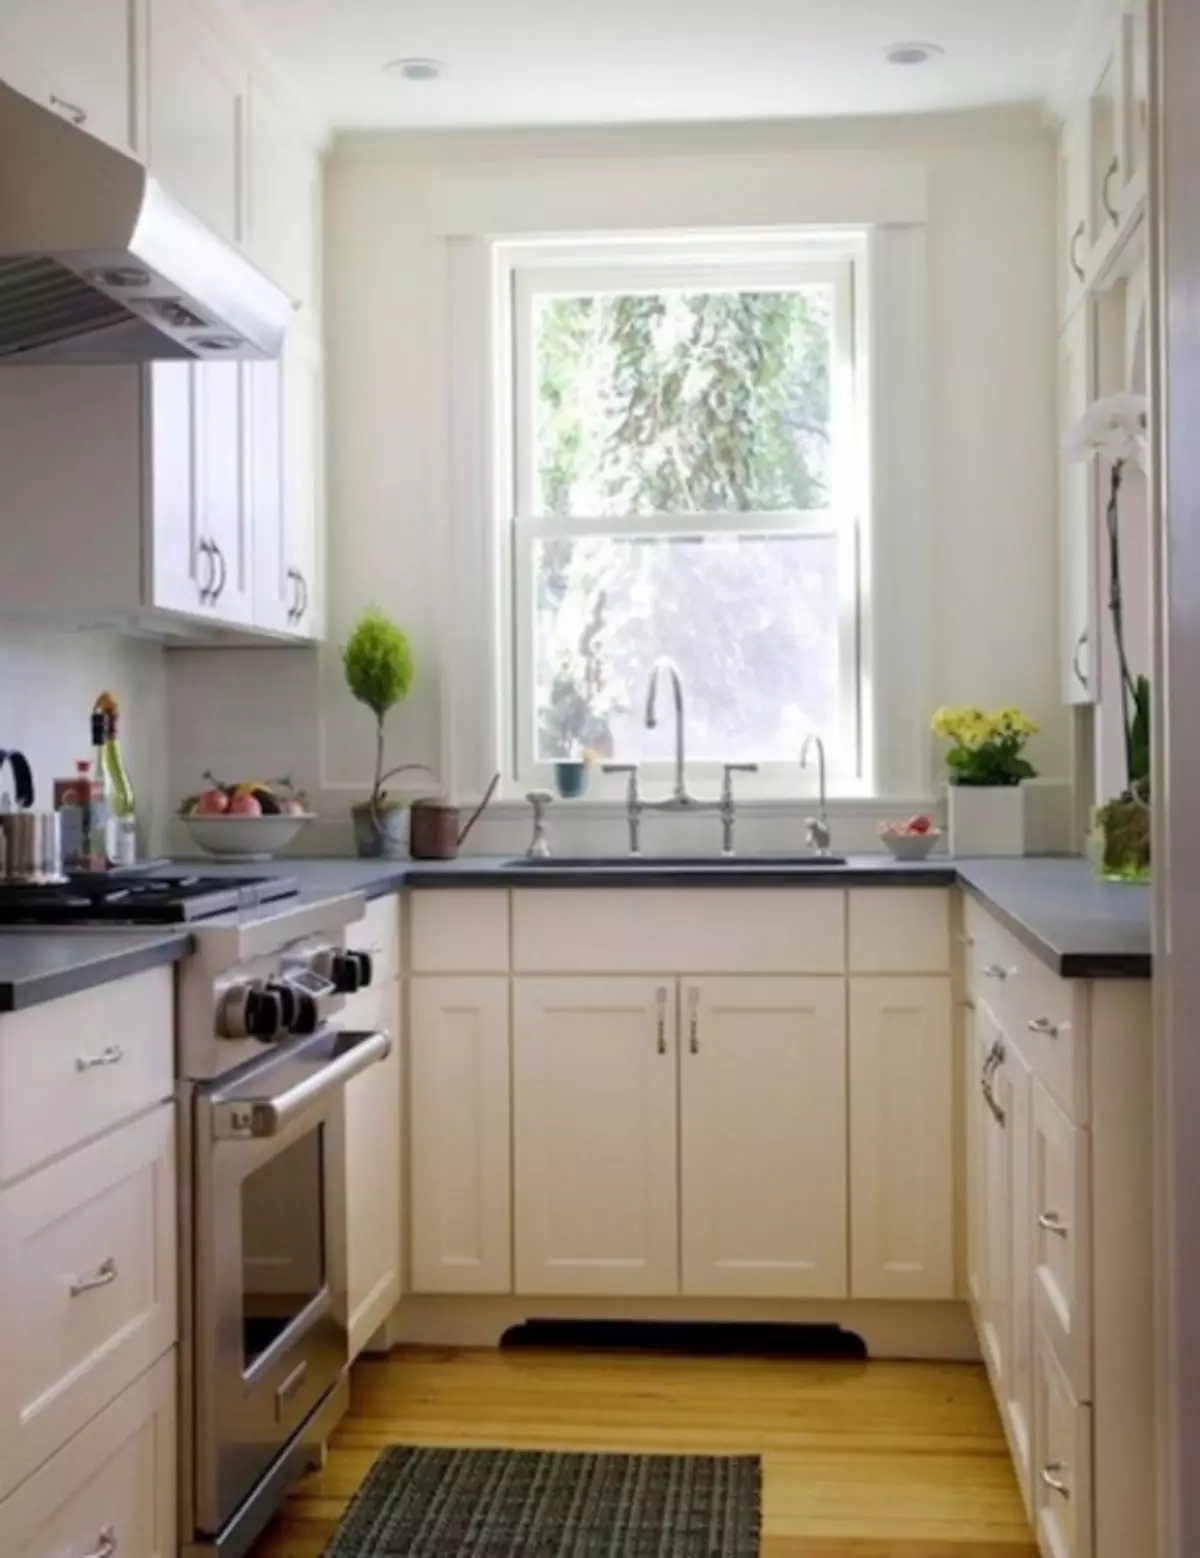 Nápady na interiér malej kuchyne 4-8 m2 (26 fotografií)